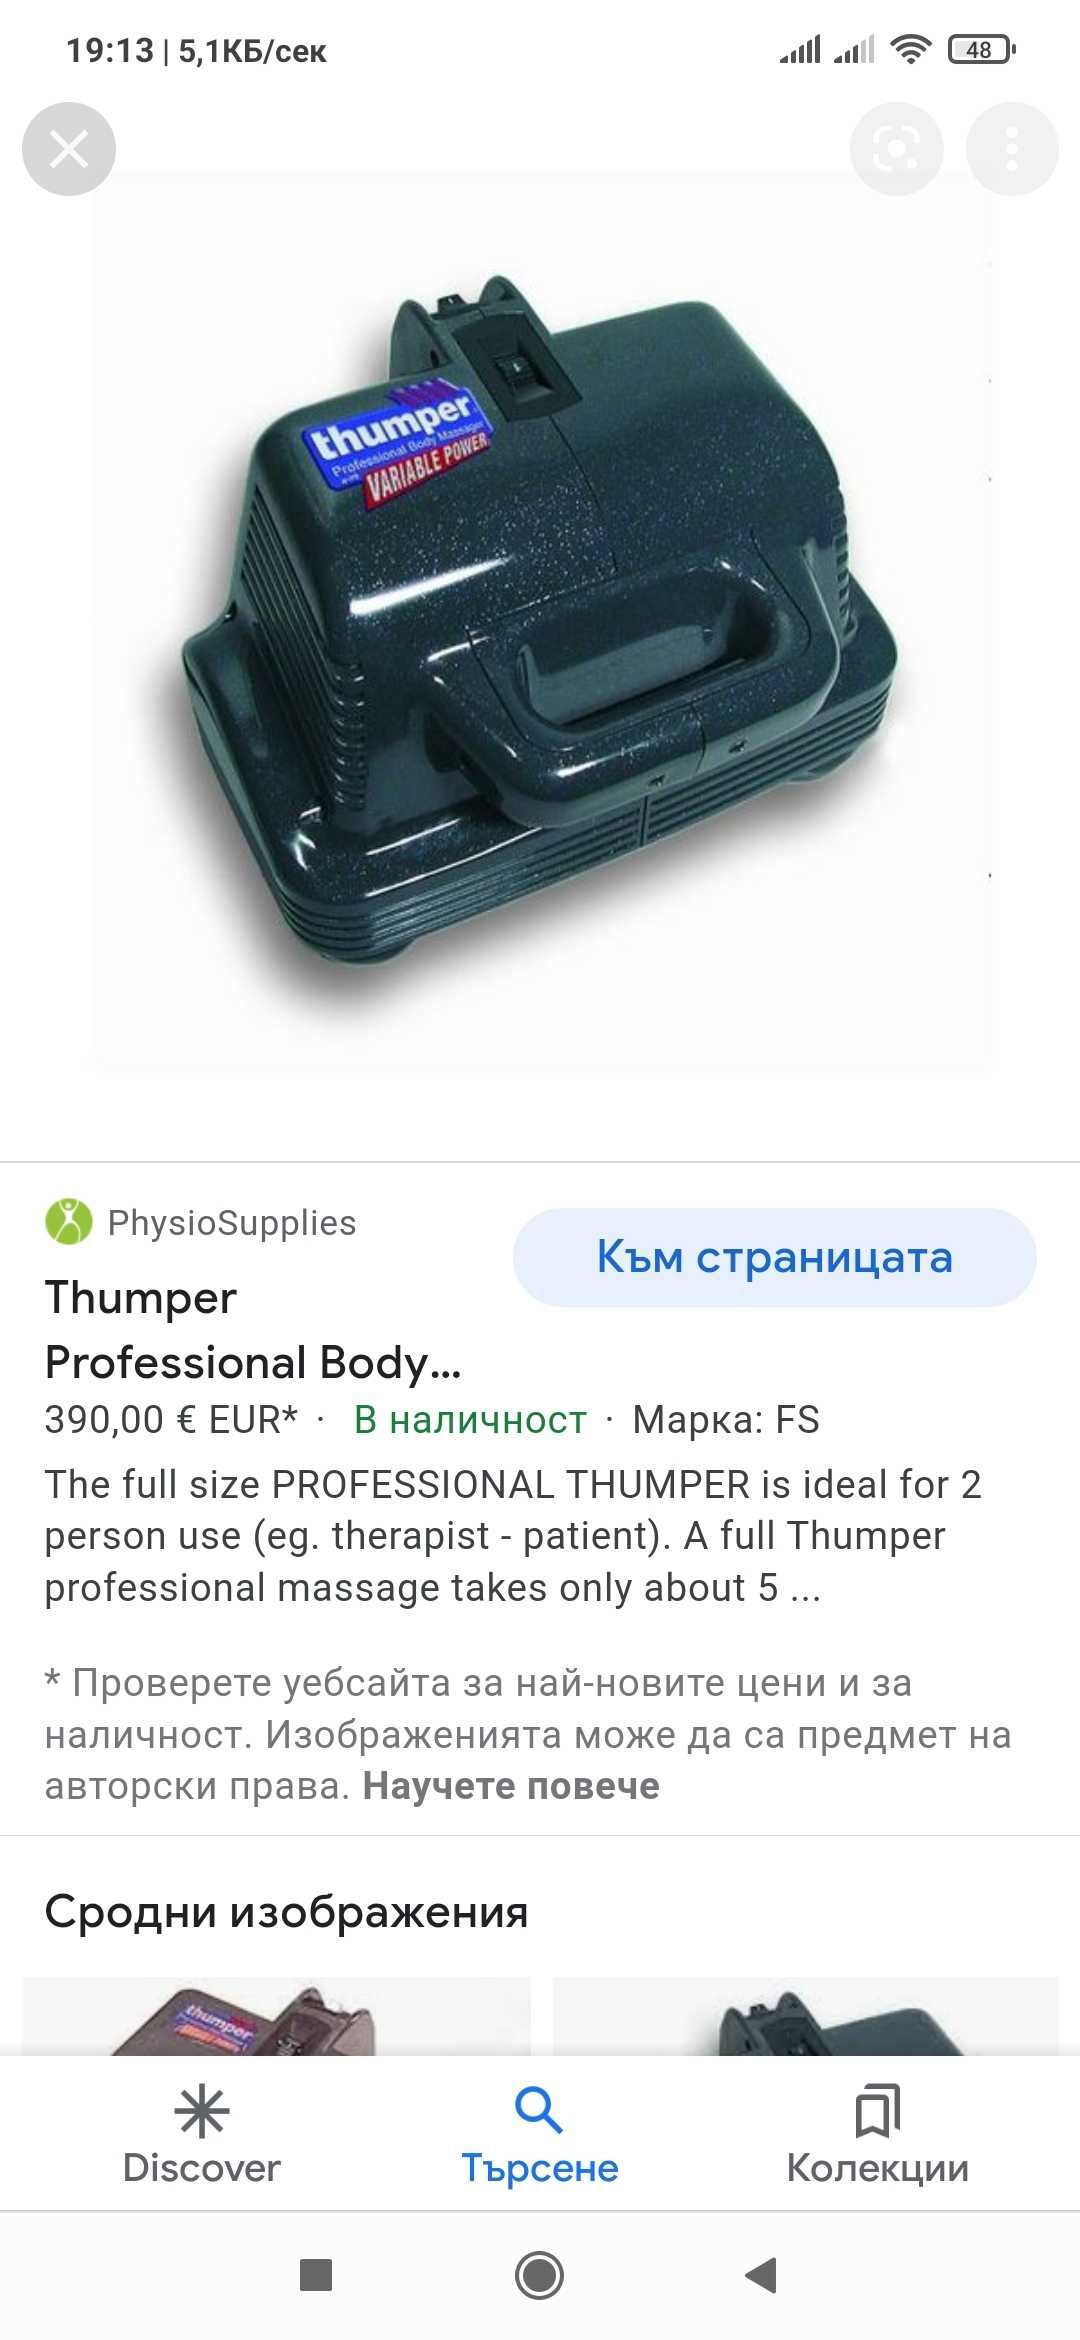 Професионален уред за масажиране Thumper .Масаж , терапия .